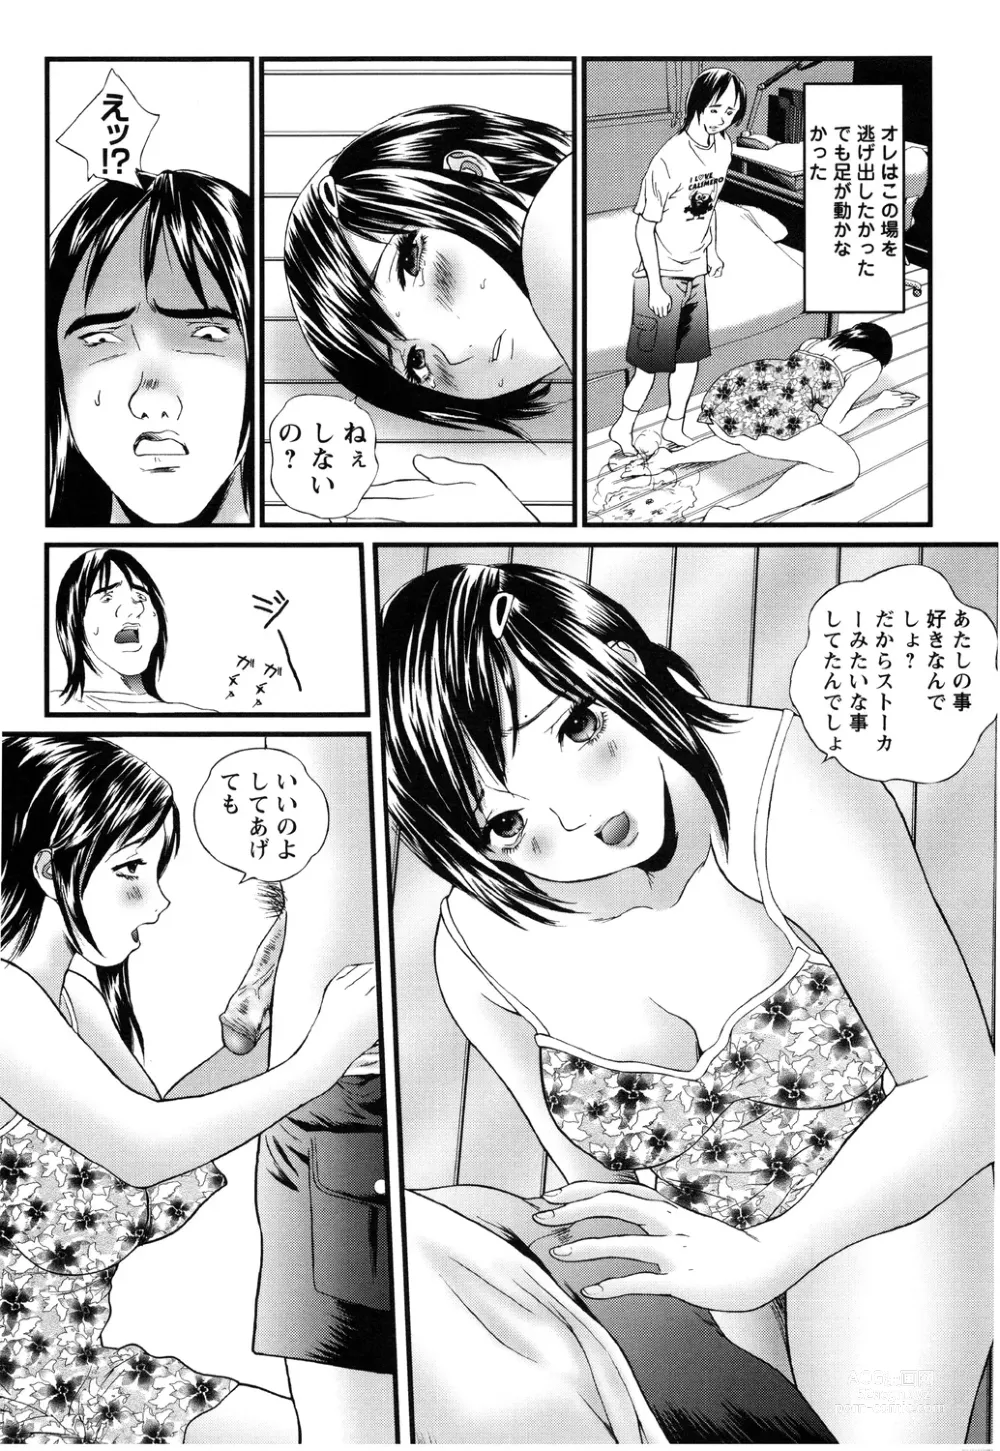 Page 166 of manga Apart zuma Ryouko